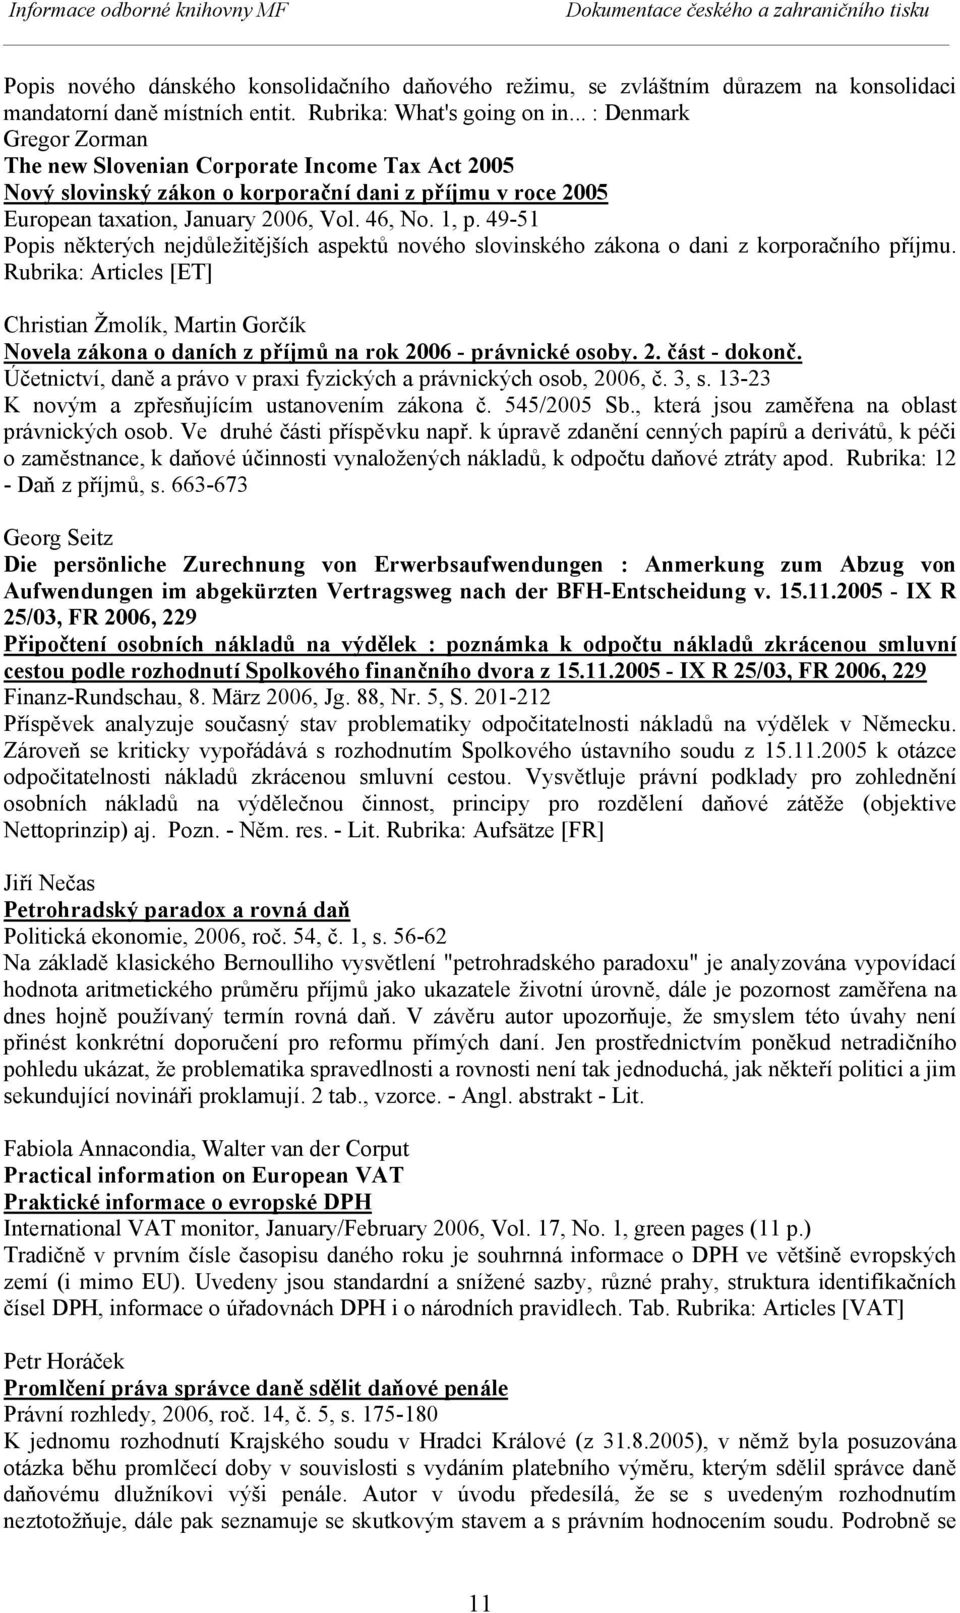 49-51 Popis některých nejdůležitějších aspektů nového slovinského zákona o dani z korporačního příjmu.